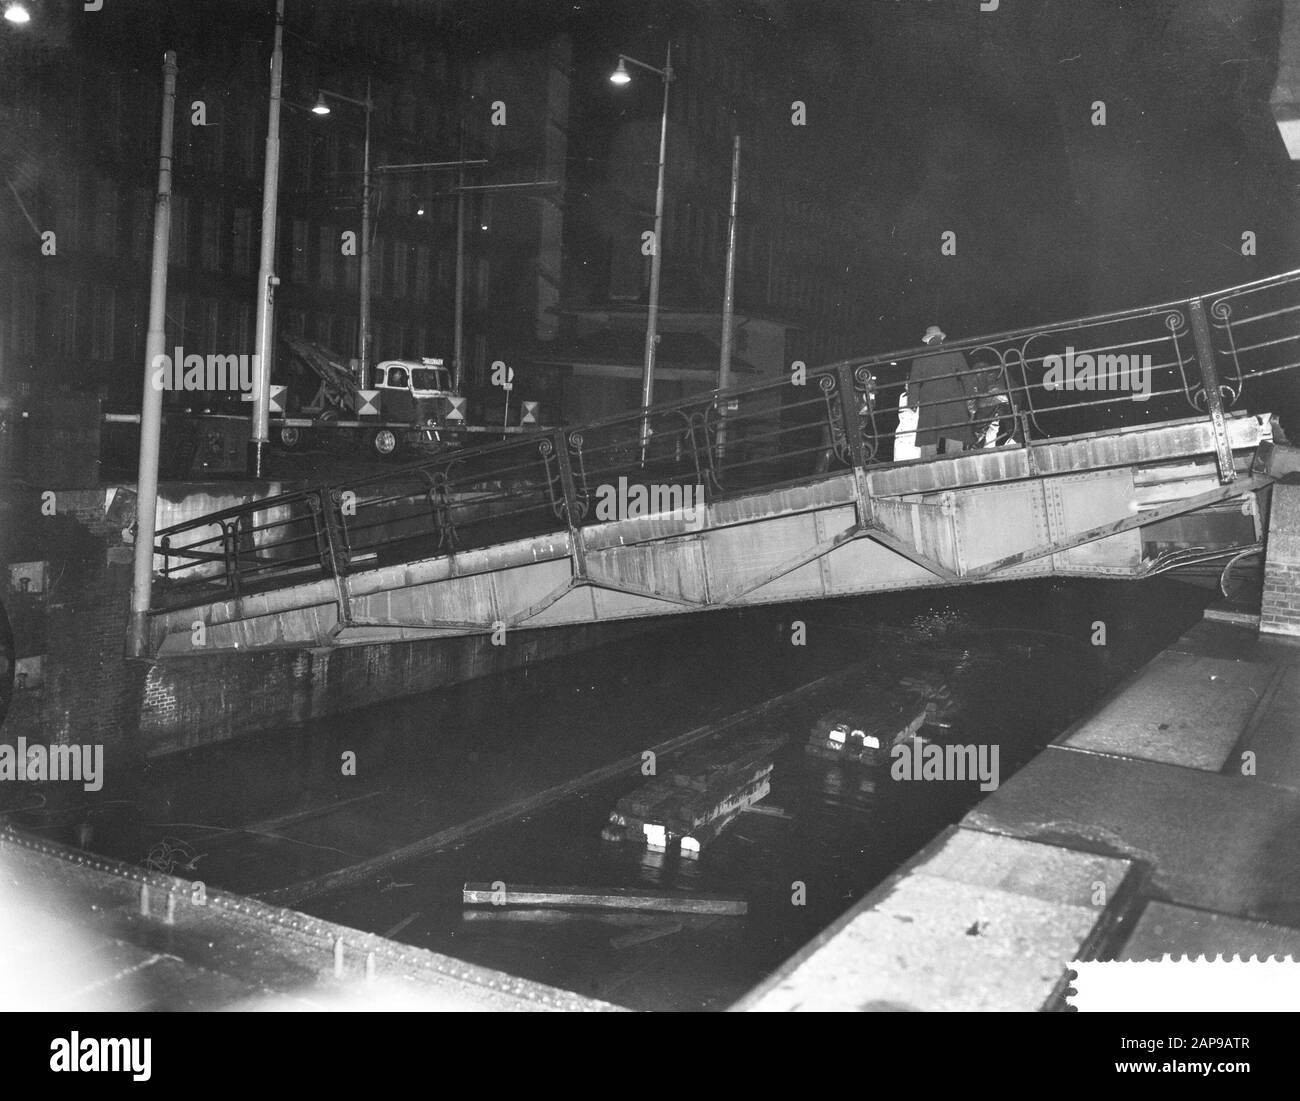 Brücke der Parkschleusen in Rotterdam brach durch Abbruch eines Gegengewichts zusammen Datum: 23. Dezember 1959 Standort: Rotterdam, Zuid-Holland Schlüsselwörter: Brücke, Abbau, Gegengewichte Stockfoto